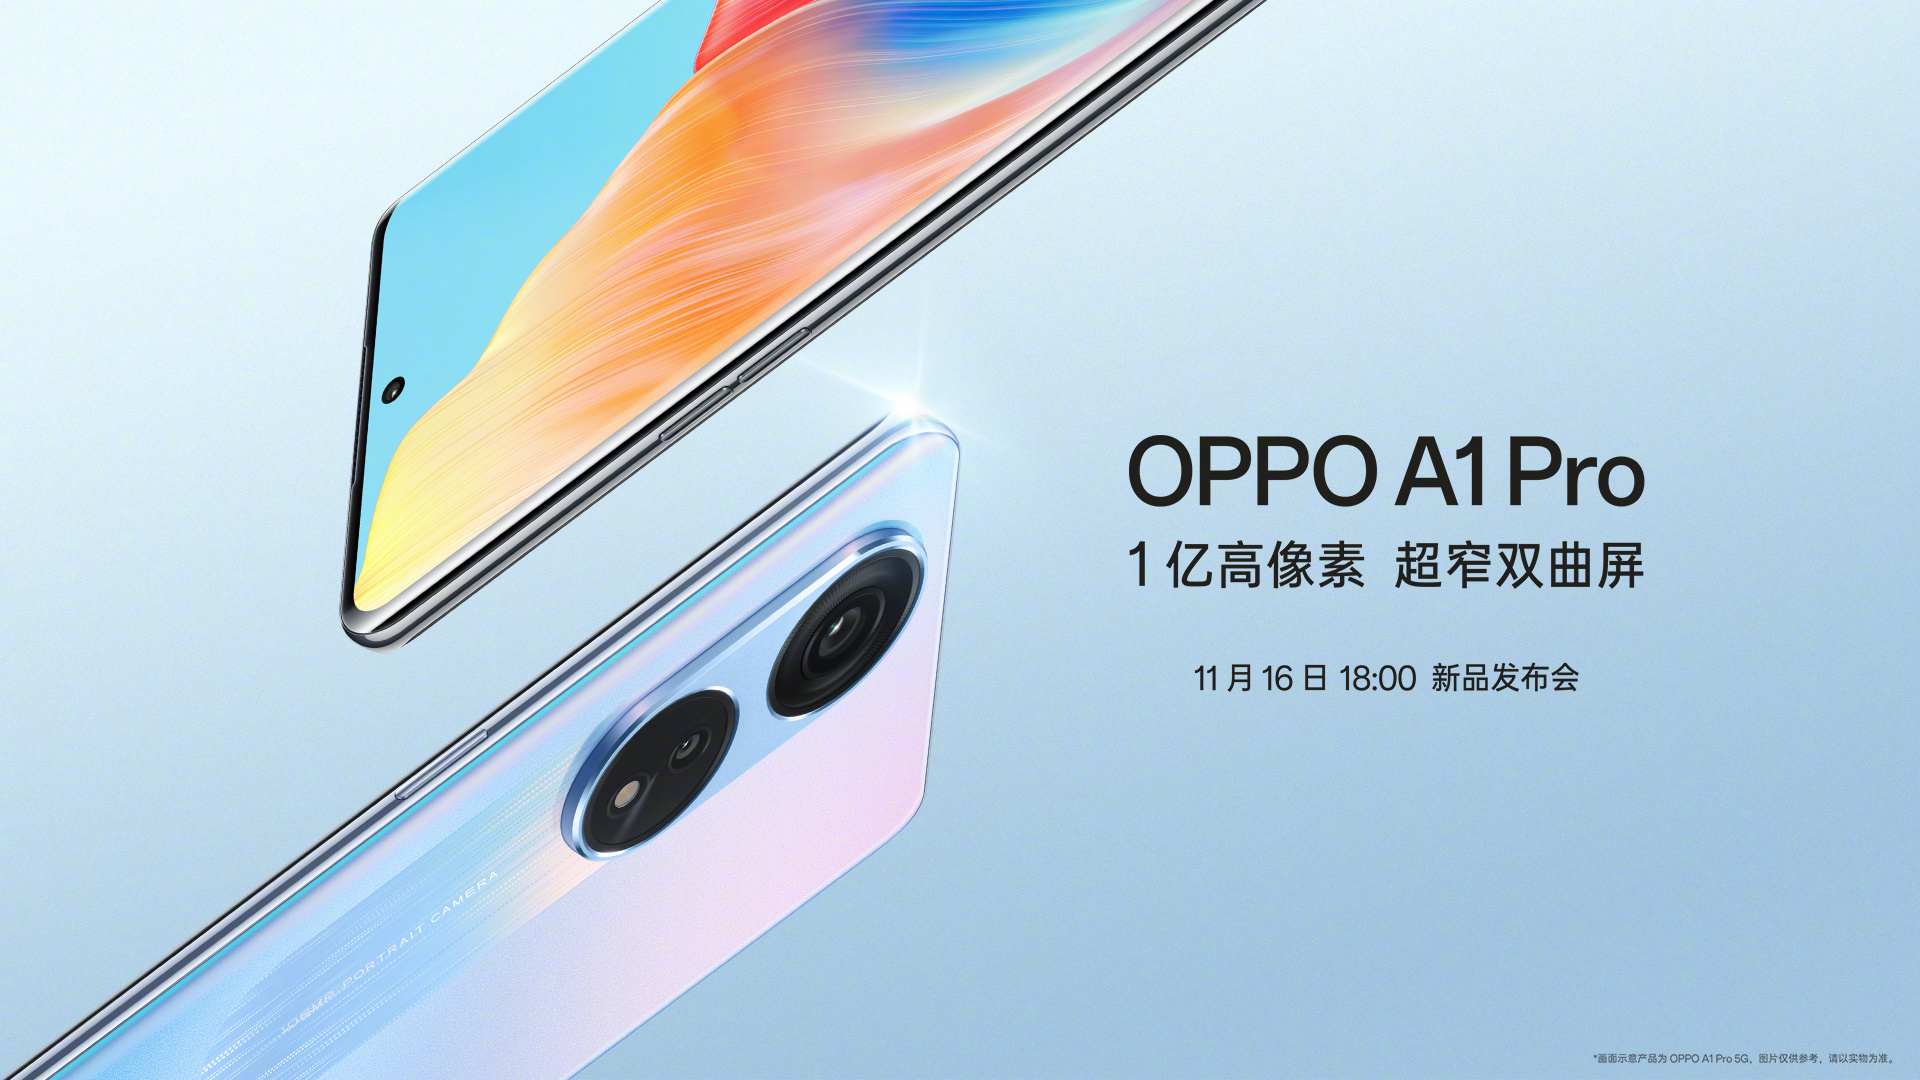 OPPO A1 Pro con pantalla AMOLED a 120 Hz, chip Snapdragon 695 y cámara de 108 MP se presentará el 16 de noviembre